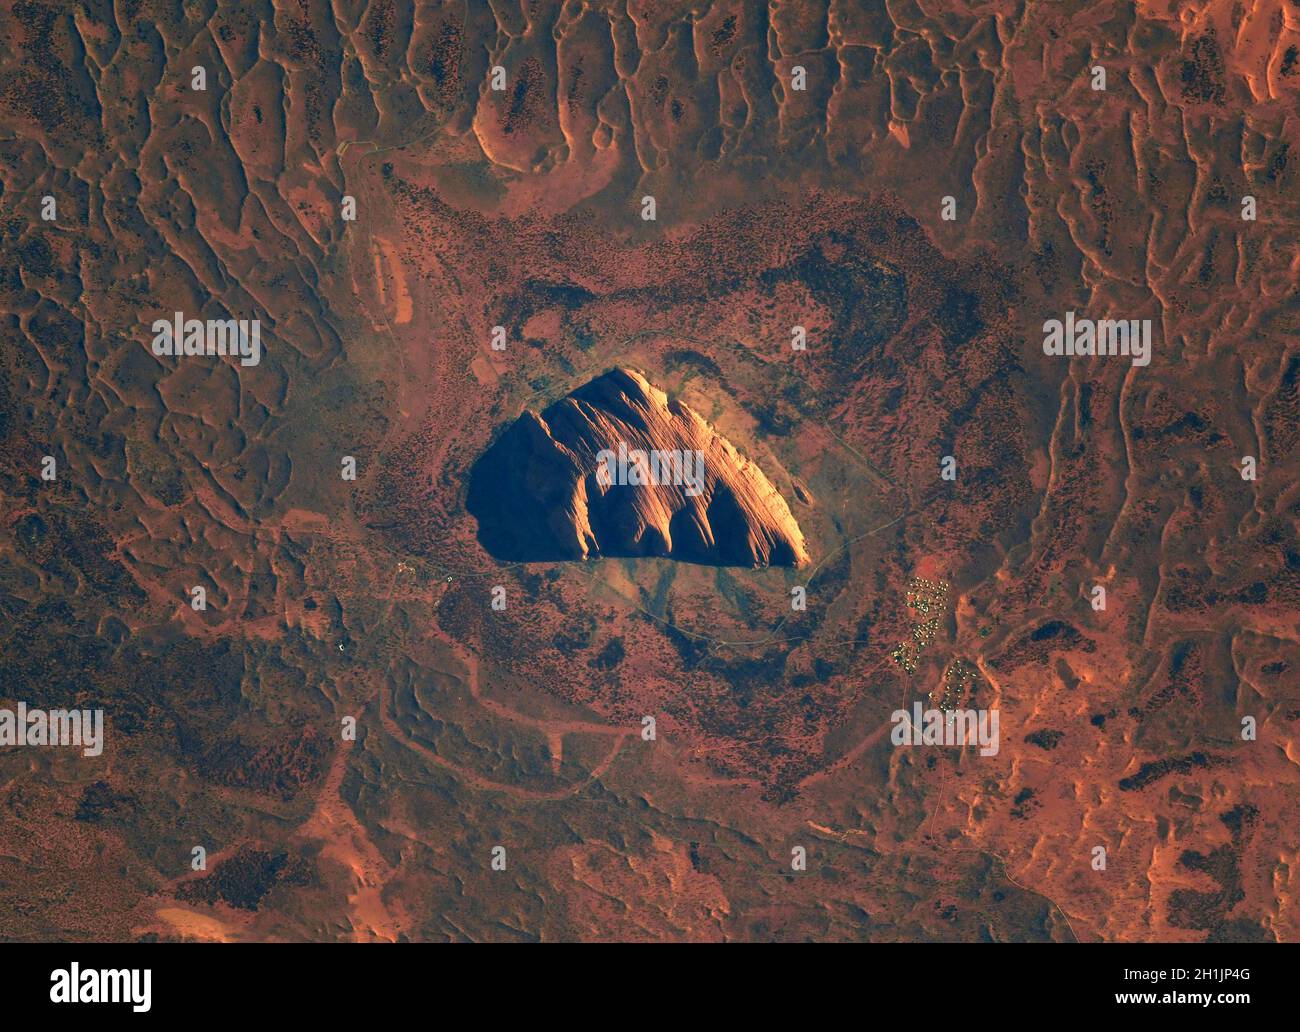 Ein Blick auf die Erde von der Internationalen Raumstation: Uluru, früher bekannt als Ayers Rock, Australien am Morgen. Ein verehrter heiliger Ort. Eine optimierte und digital verbesserte Version eines NASA/ESA-Bildes. Obligatorische Gutschrift: NASA/ESA/T. Pesquet. Hinweis: Nutzungseinschränkungen: Nicht als Billigung zu präsentieren. Stockfoto